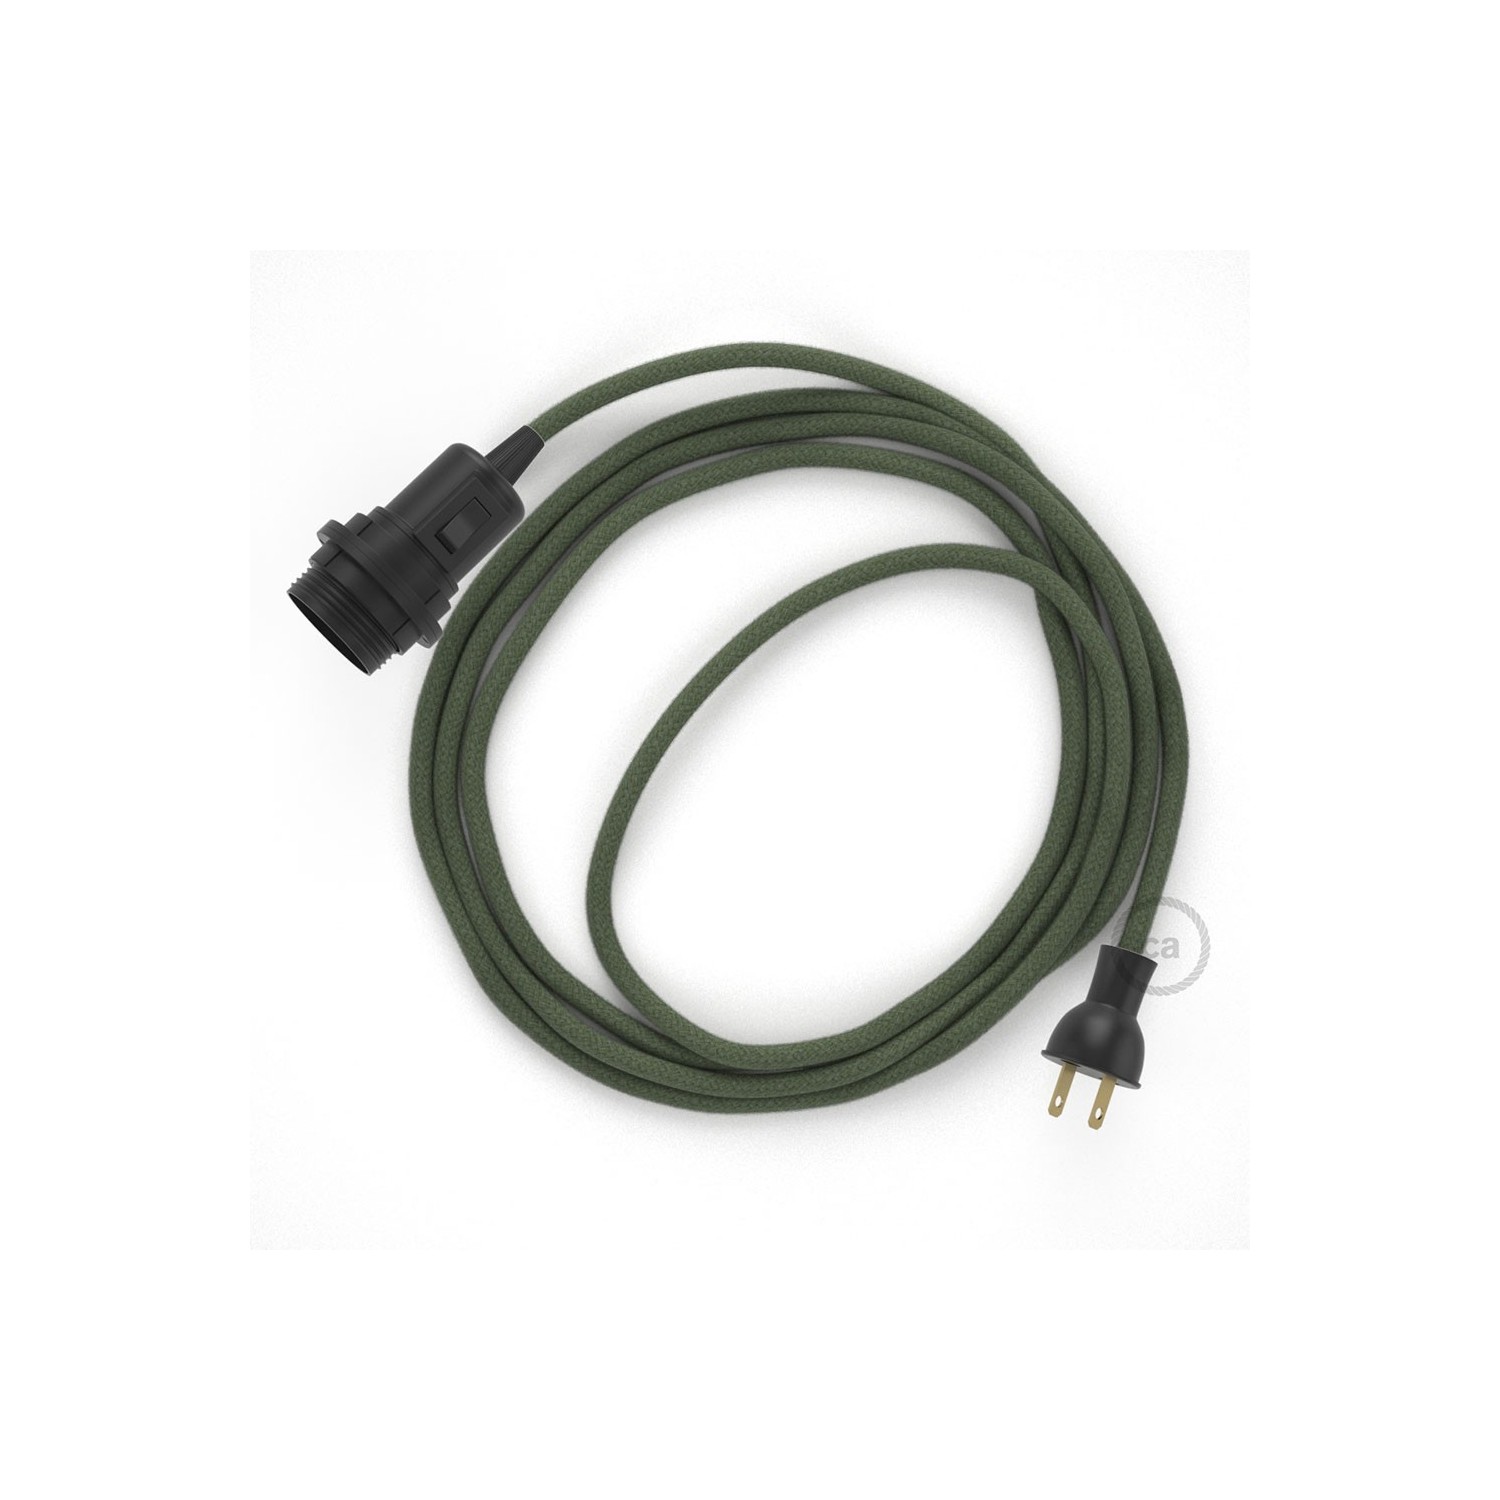 Crea tu Snake para pantalla con cable de Algodón Gris Verde RC63, socket y enchufe, y trae la luz donde tu quieras.